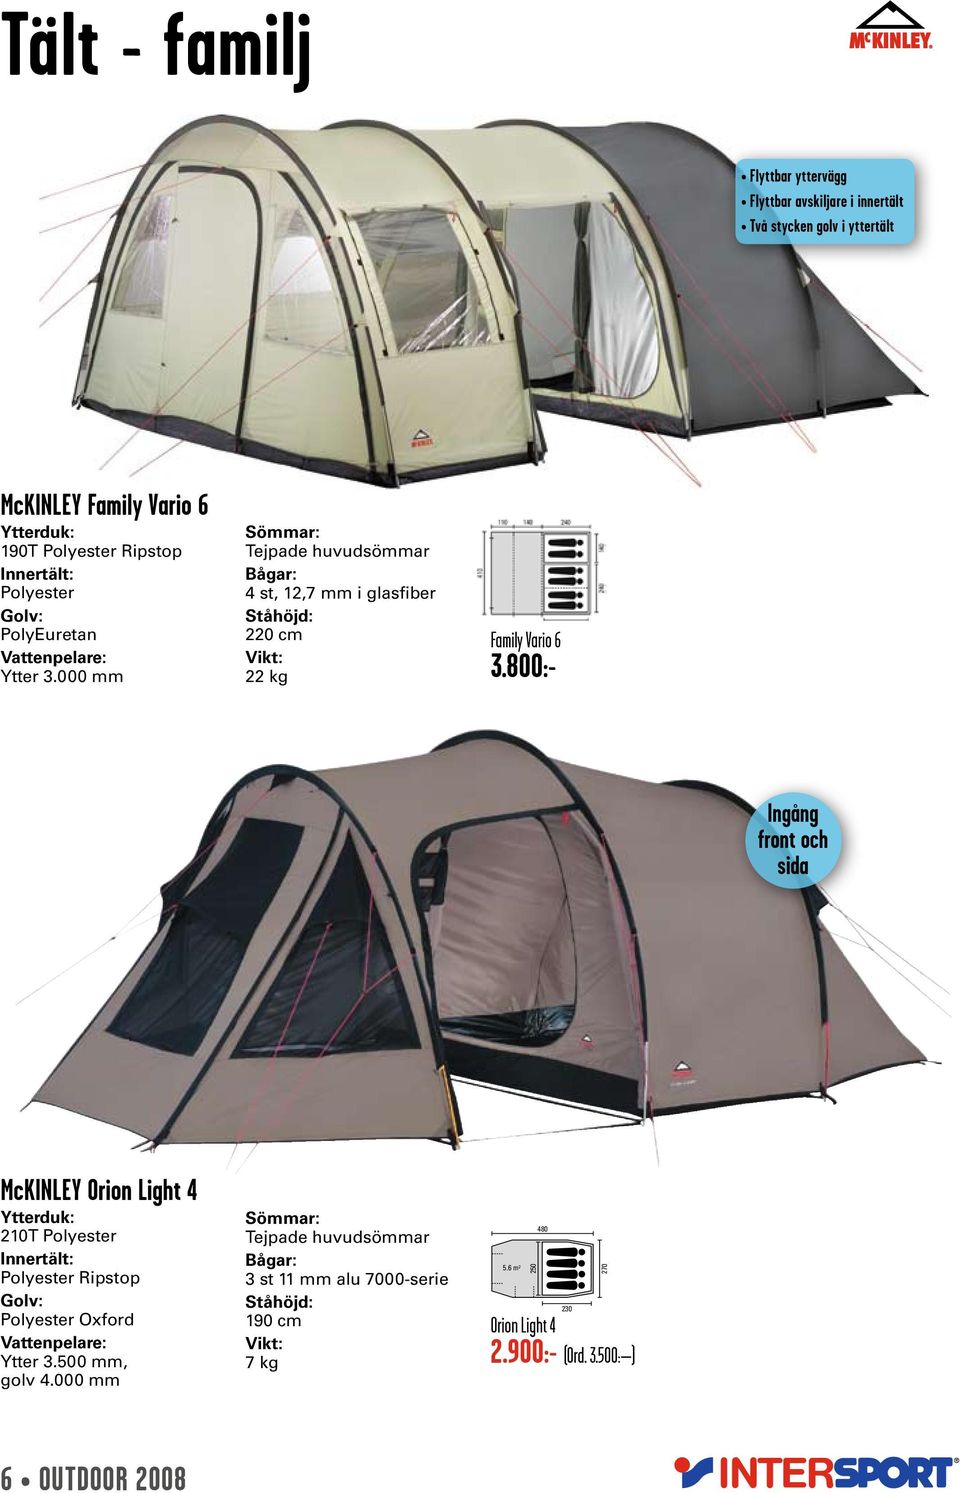 Outdoor tält, sovsäckar, liggunderlag, ryggsäckar - PDF Gratis nedladdning